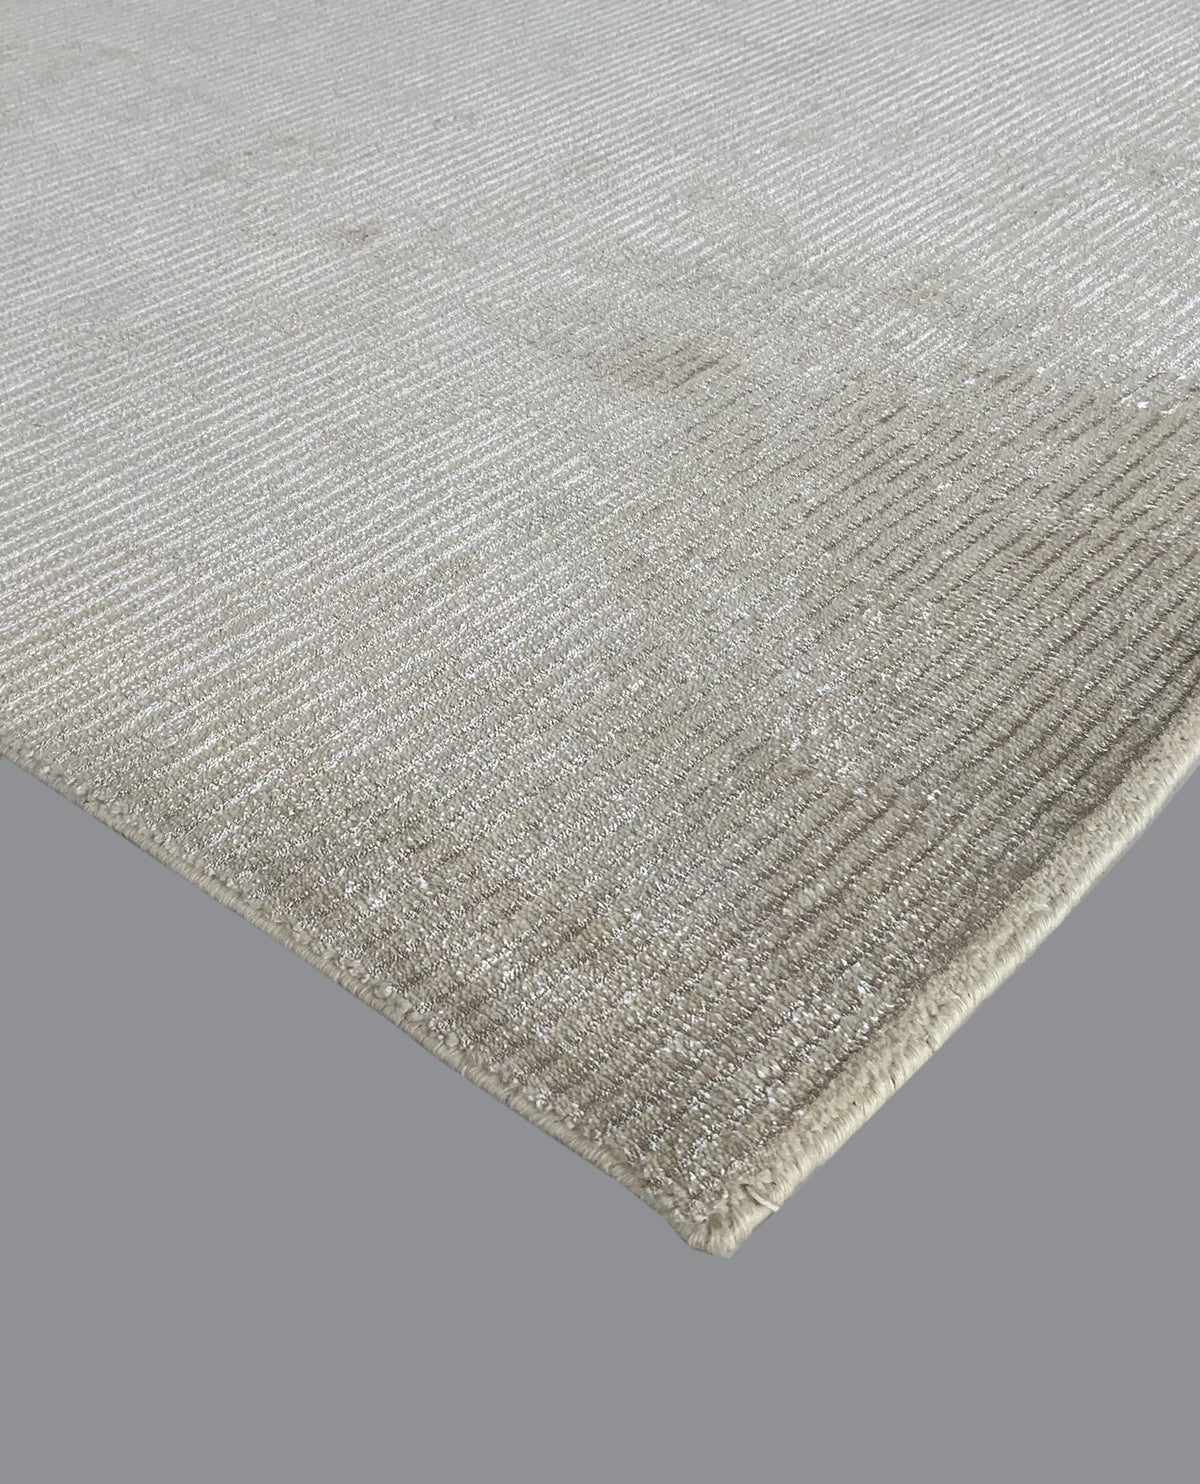 Rugslane Plain White Carpet 4ft X 6ft